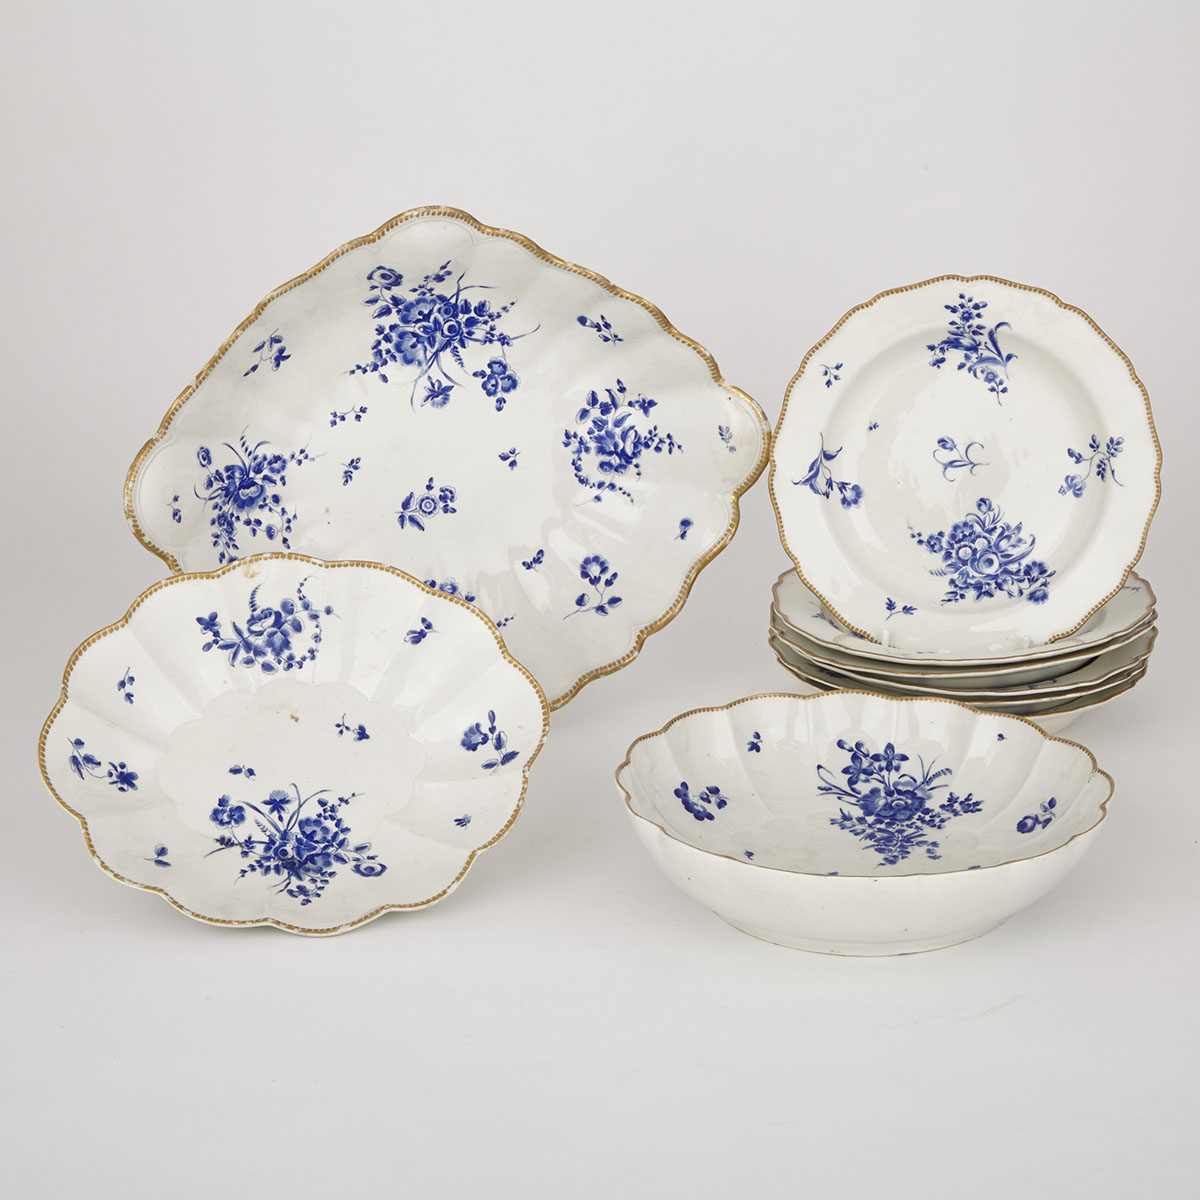 Group of Worcester ‘Dry Blue’ Enameled Tablewares, c.1780